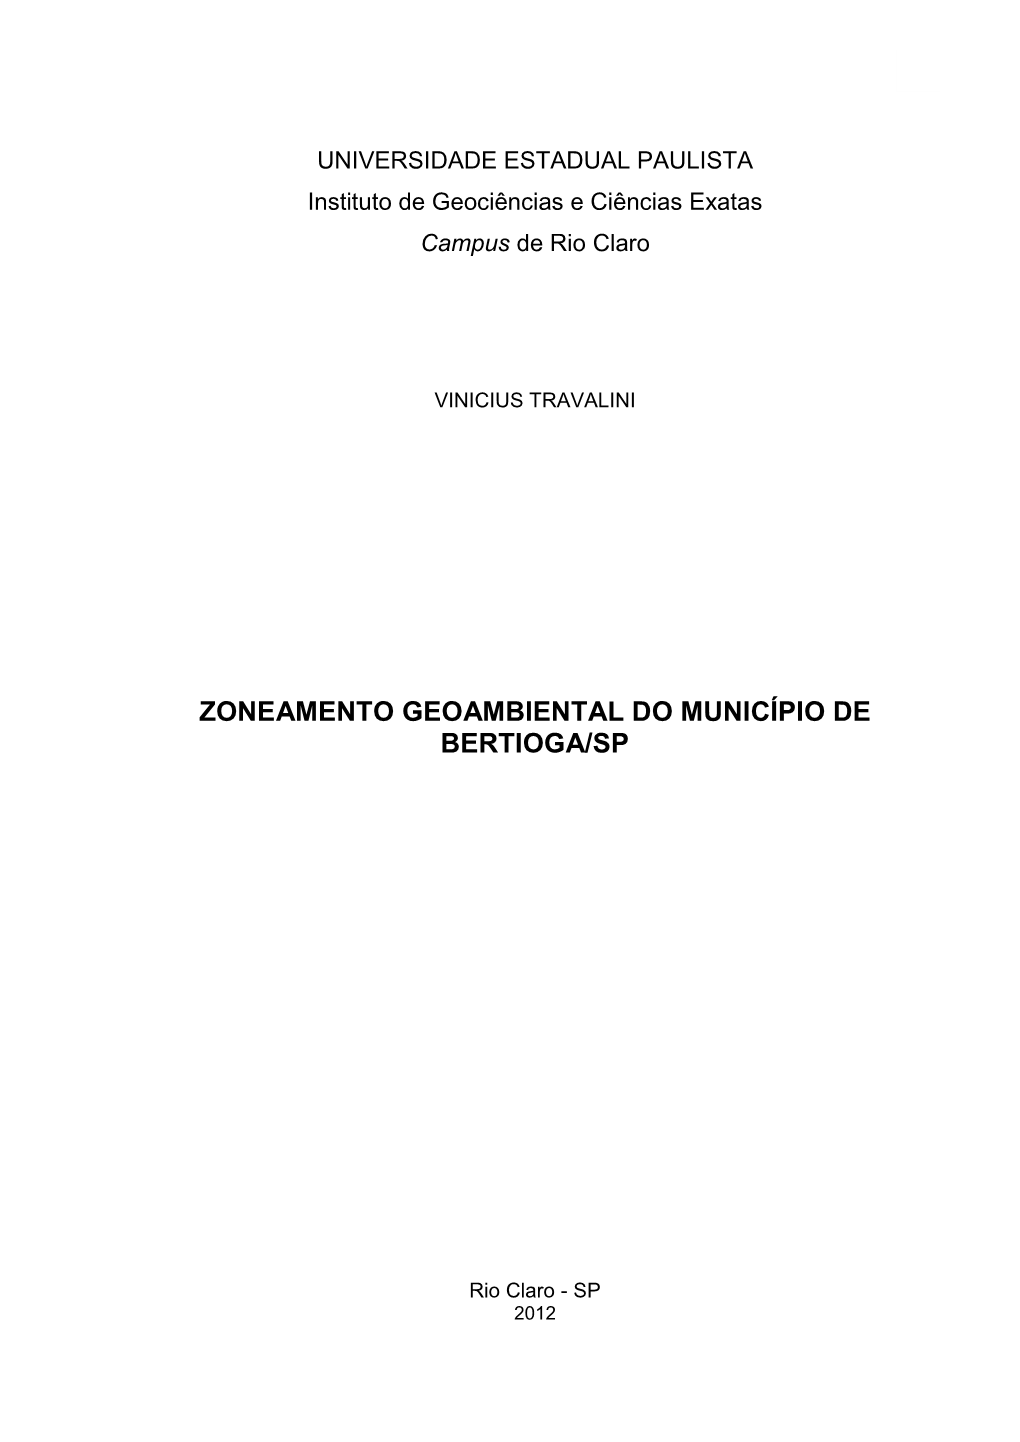 Zoneamento Geoambiental Do Município De Bertioga/Sp